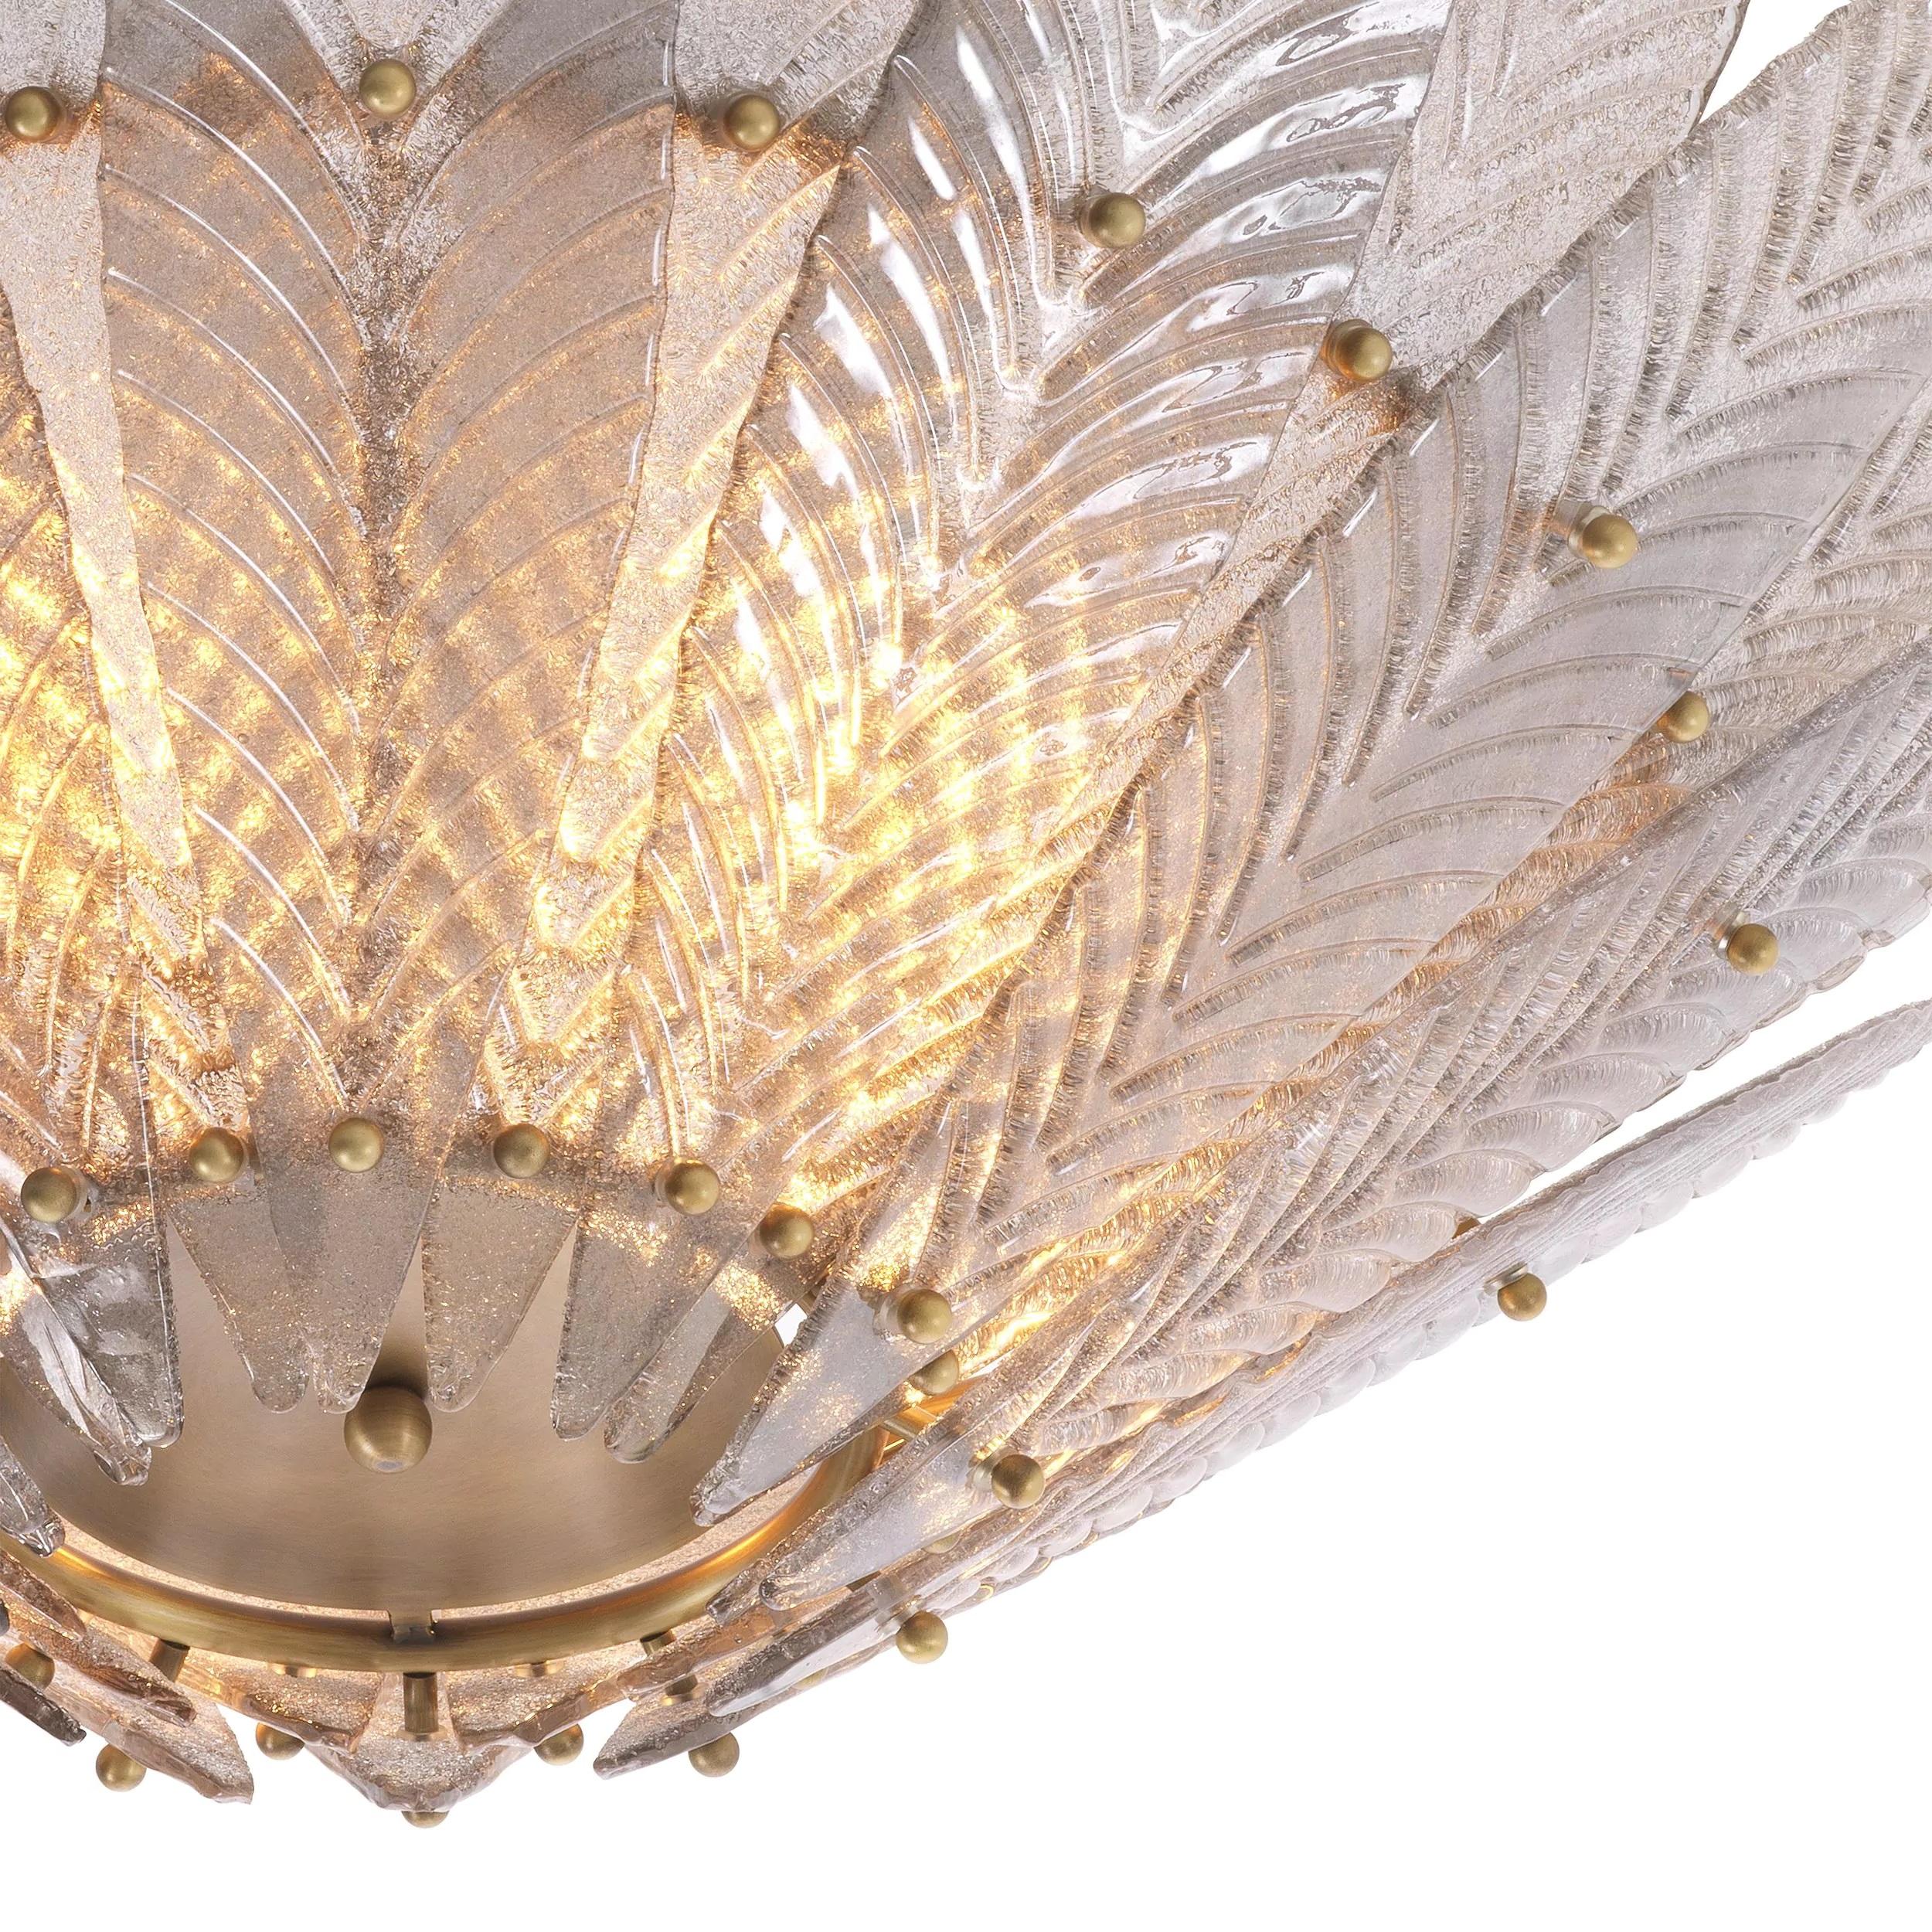 1950er Jahre italienisches Design und Art Deco-Stil Messing und Glas Blume Kronleuchter aus einer Messing-Metall-Struktur mit handgefertigten Glasblume förmigen Schatten geschmückt. 4 E14 Glühbirnen sind erforderlich.